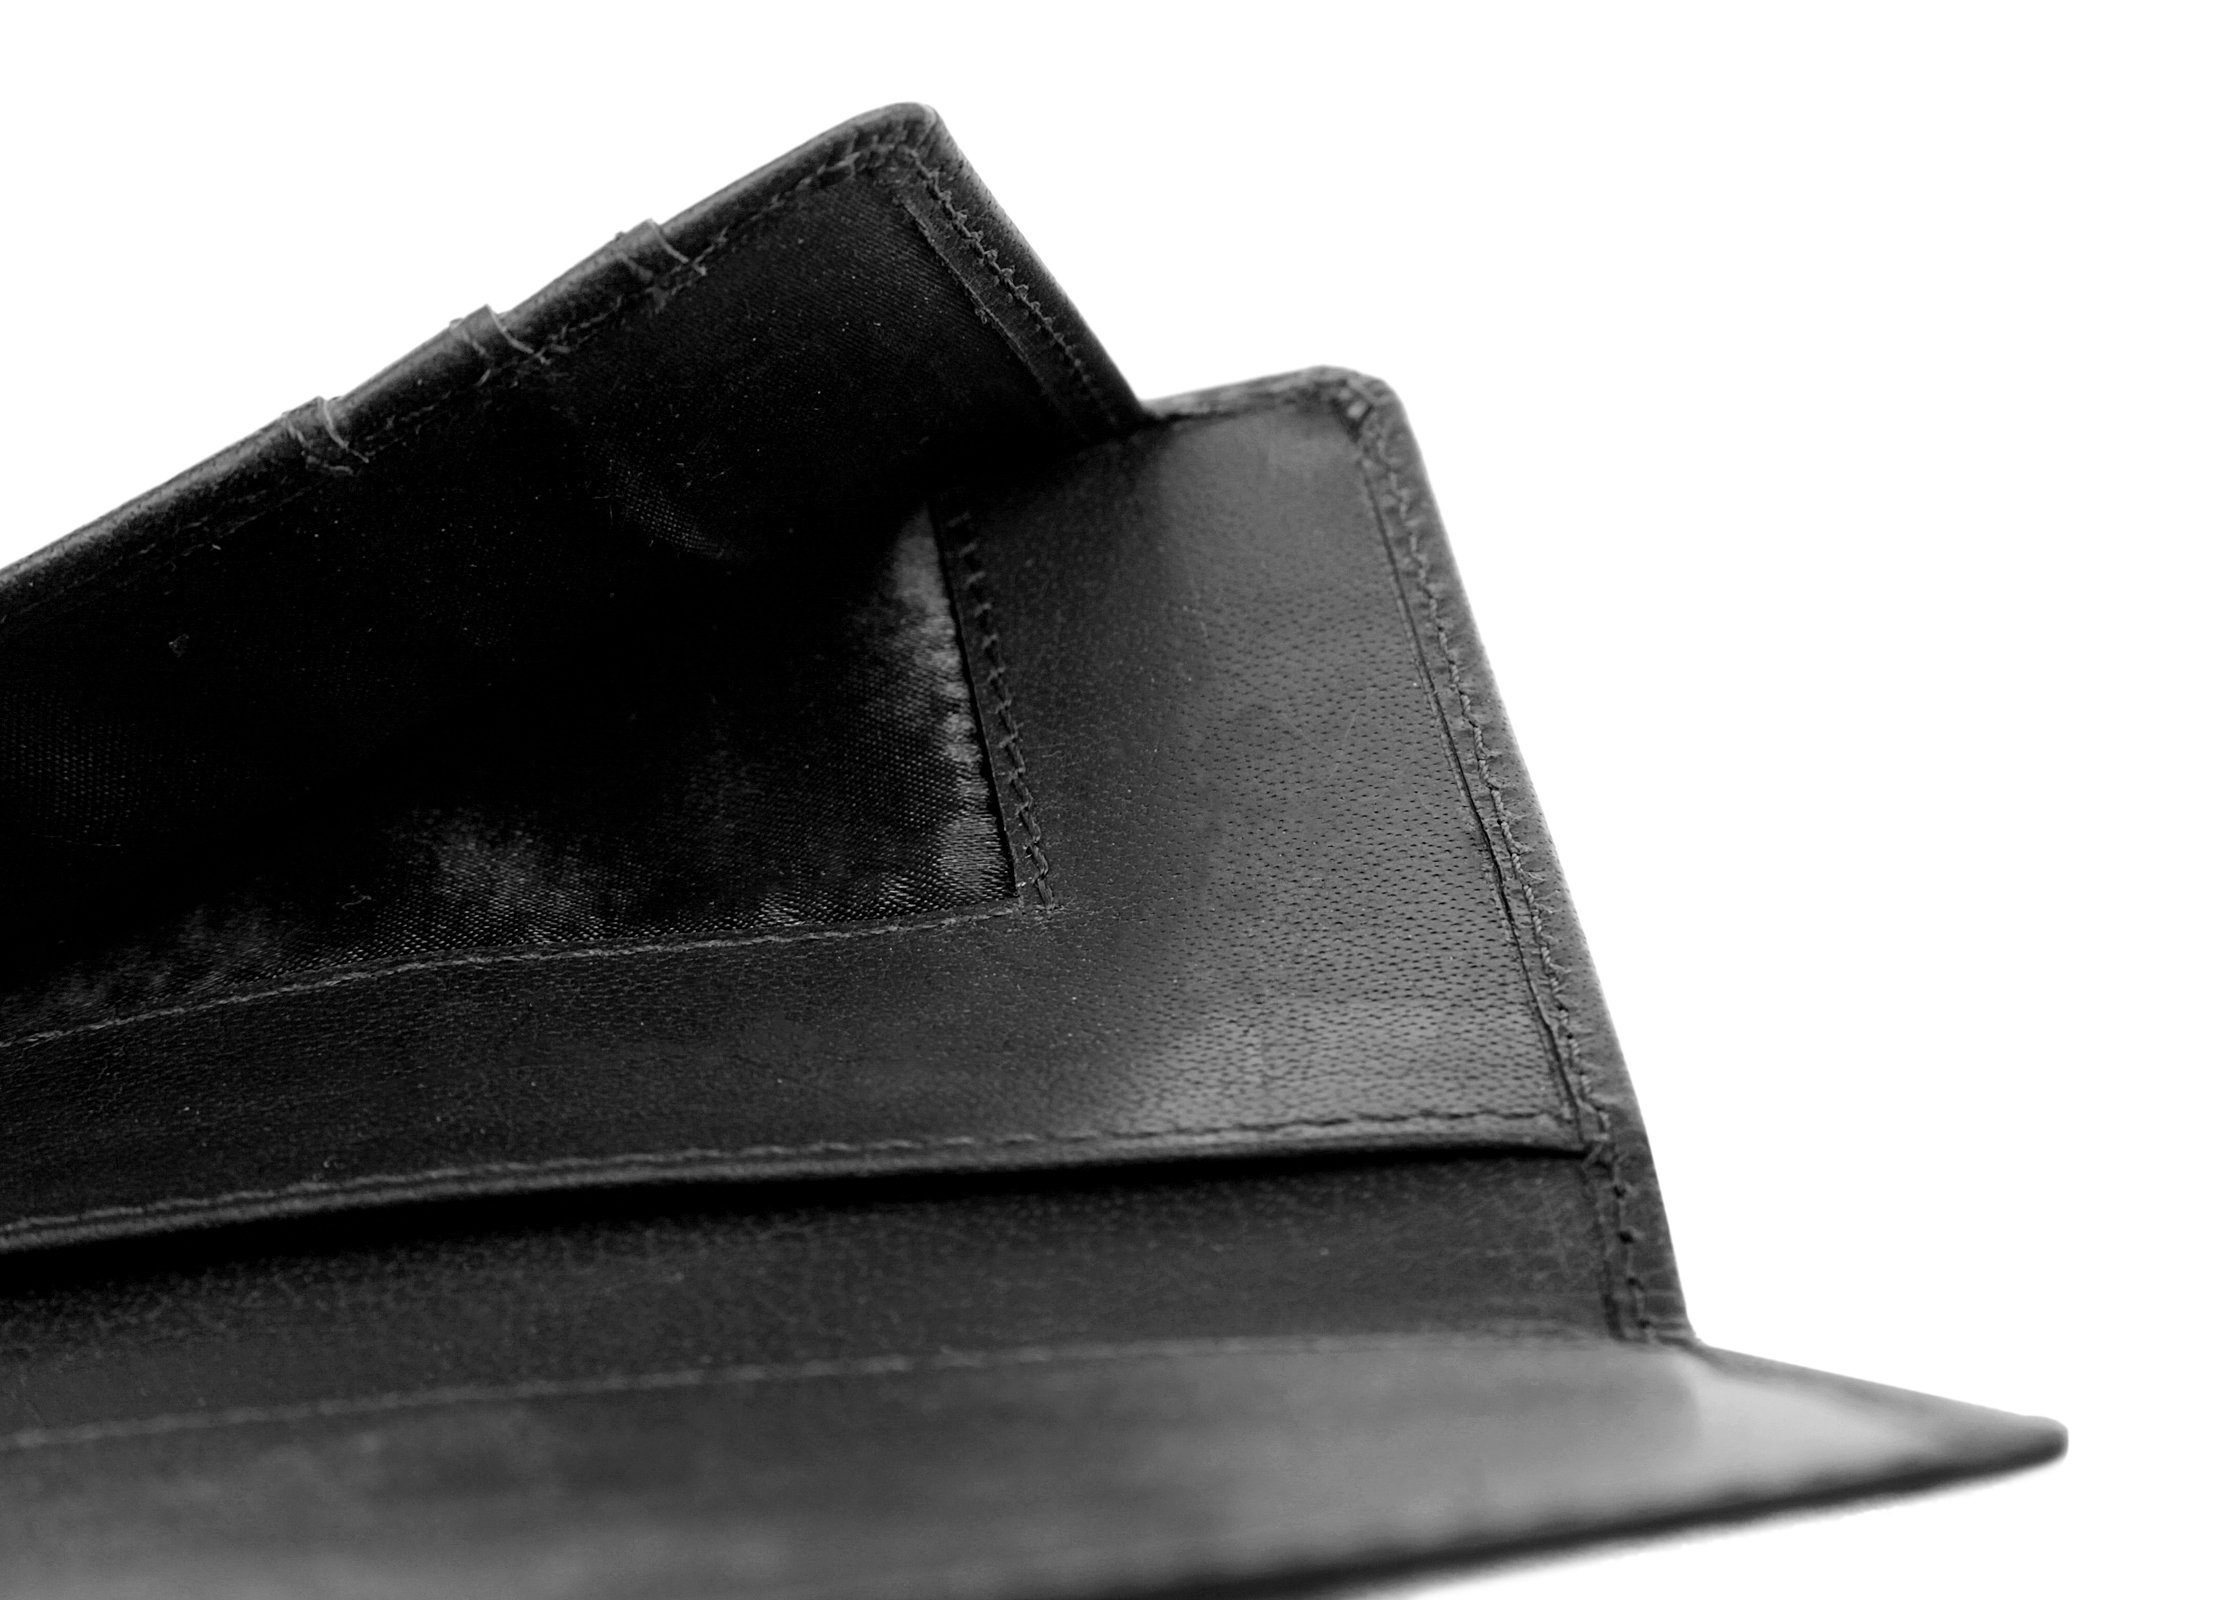 Leder X-Zone Brieftasche, echt schwarz